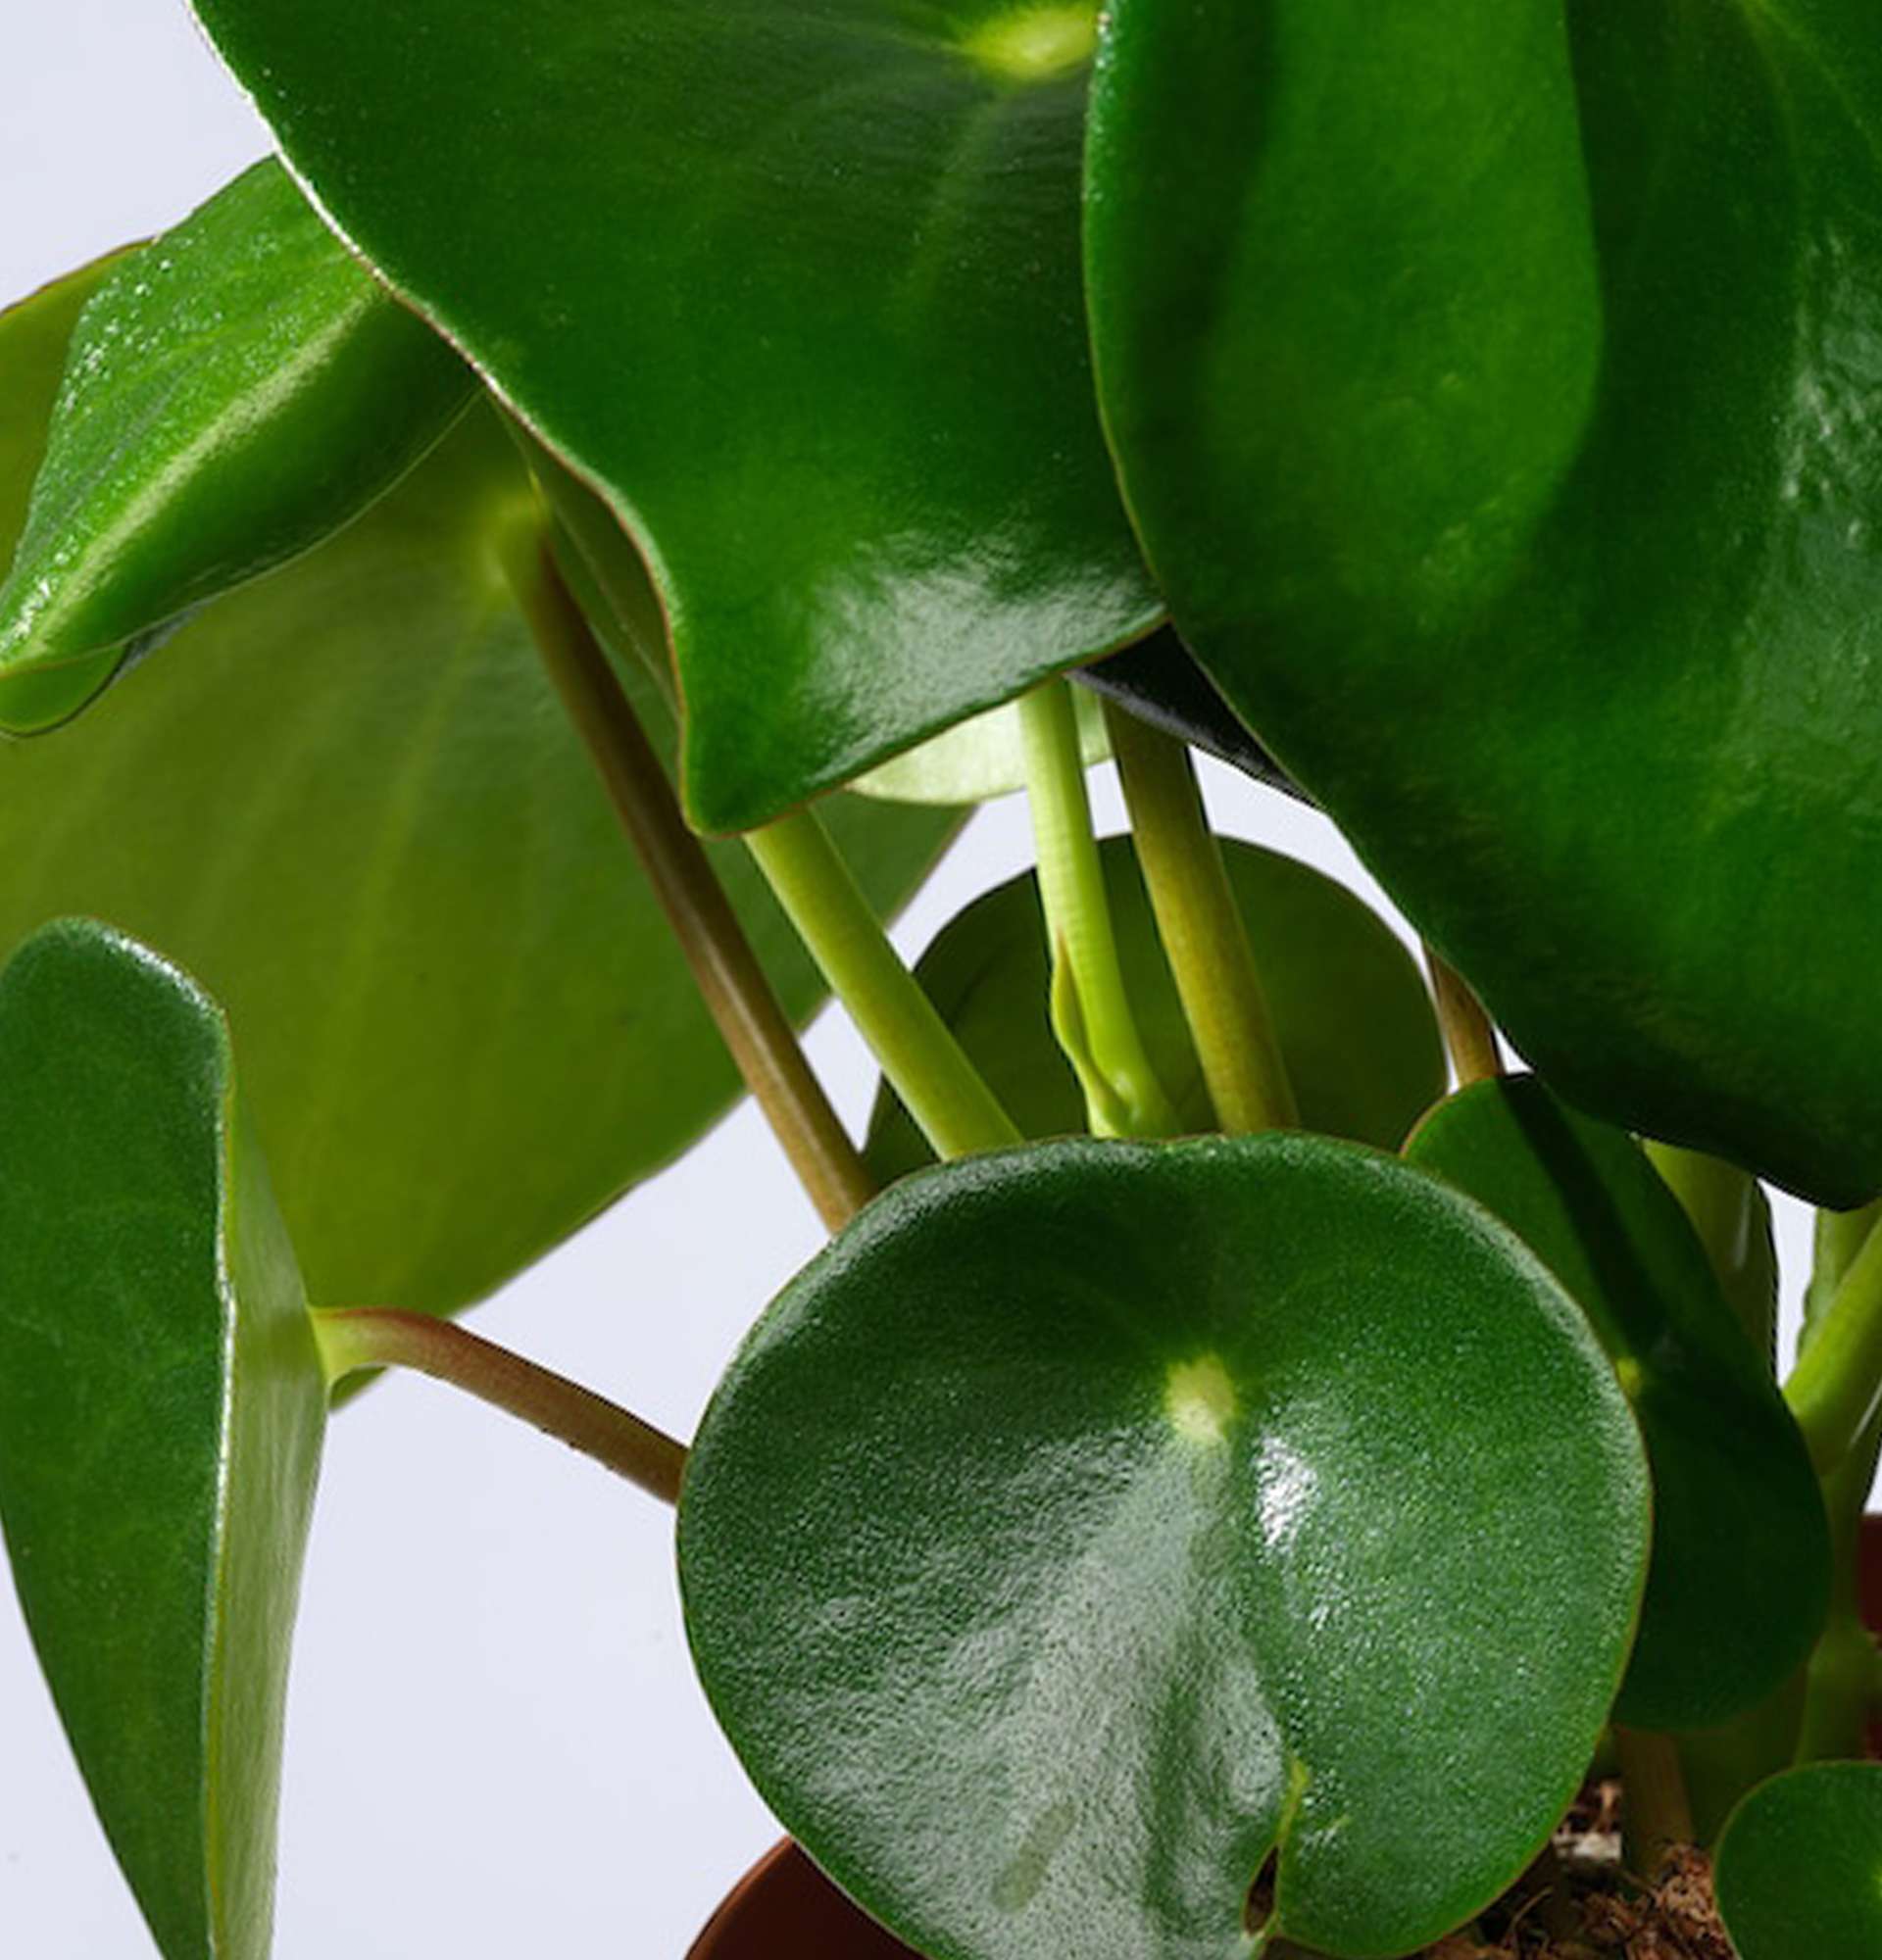  пеперомия фото - цветок с насыщенными зелеными листьями